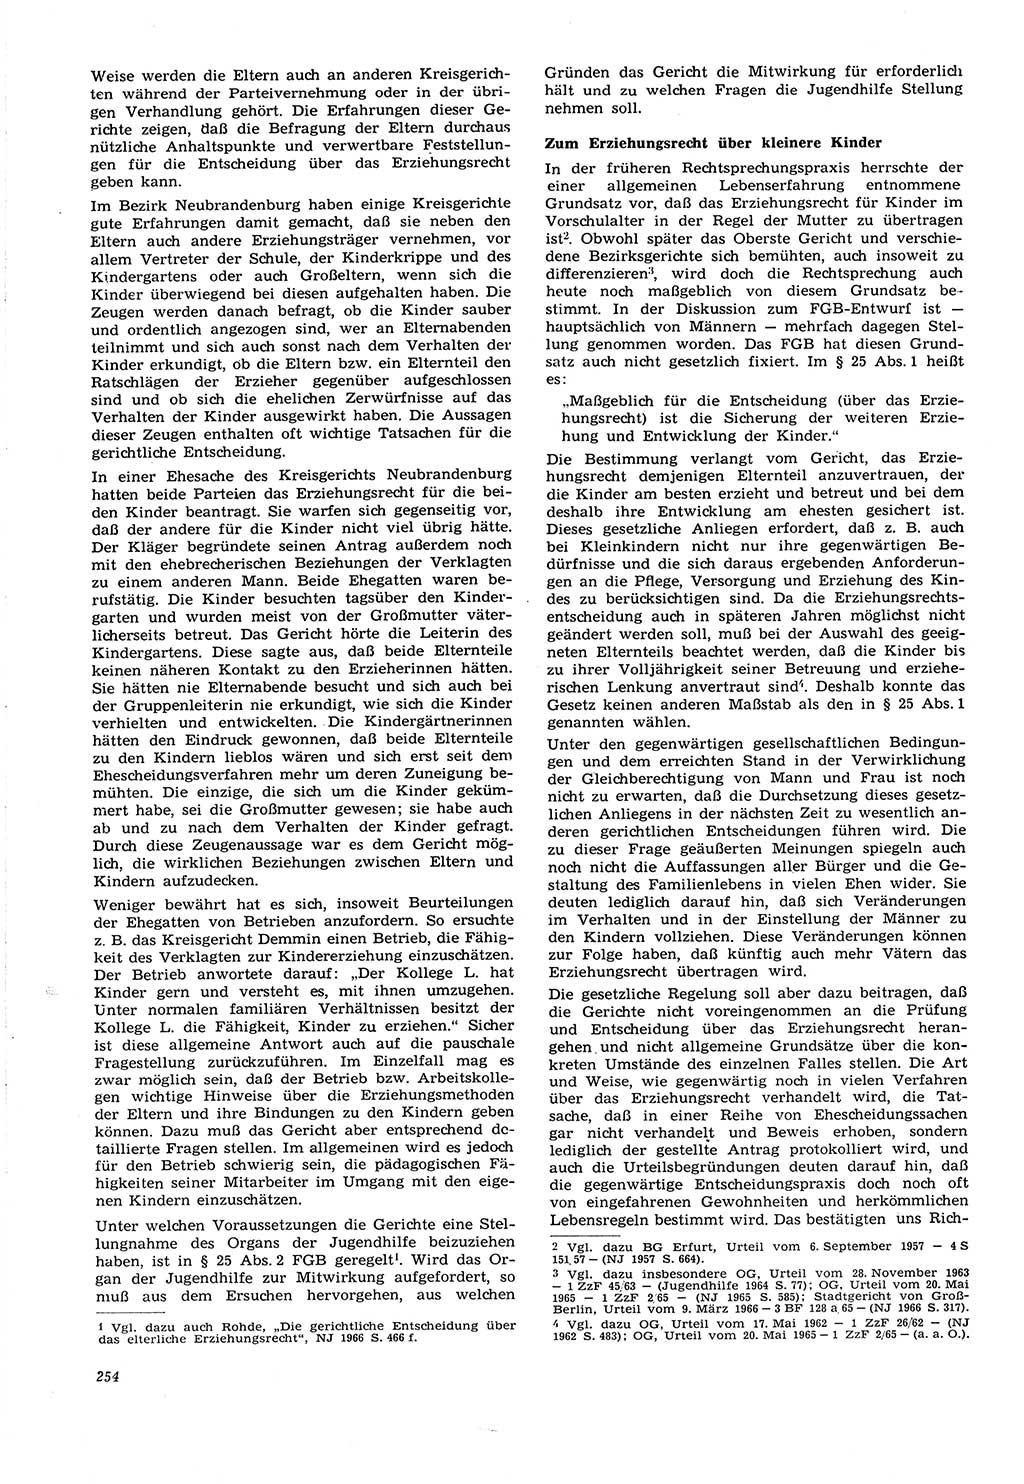 Neue Justiz (NJ), Zeitschrift für Recht und Rechtswissenschaft [Deutsche Demokratische Republik (DDR)], 21. Jahrgang 1967, Seite 254 (NJ DDR 1967, S. 254)